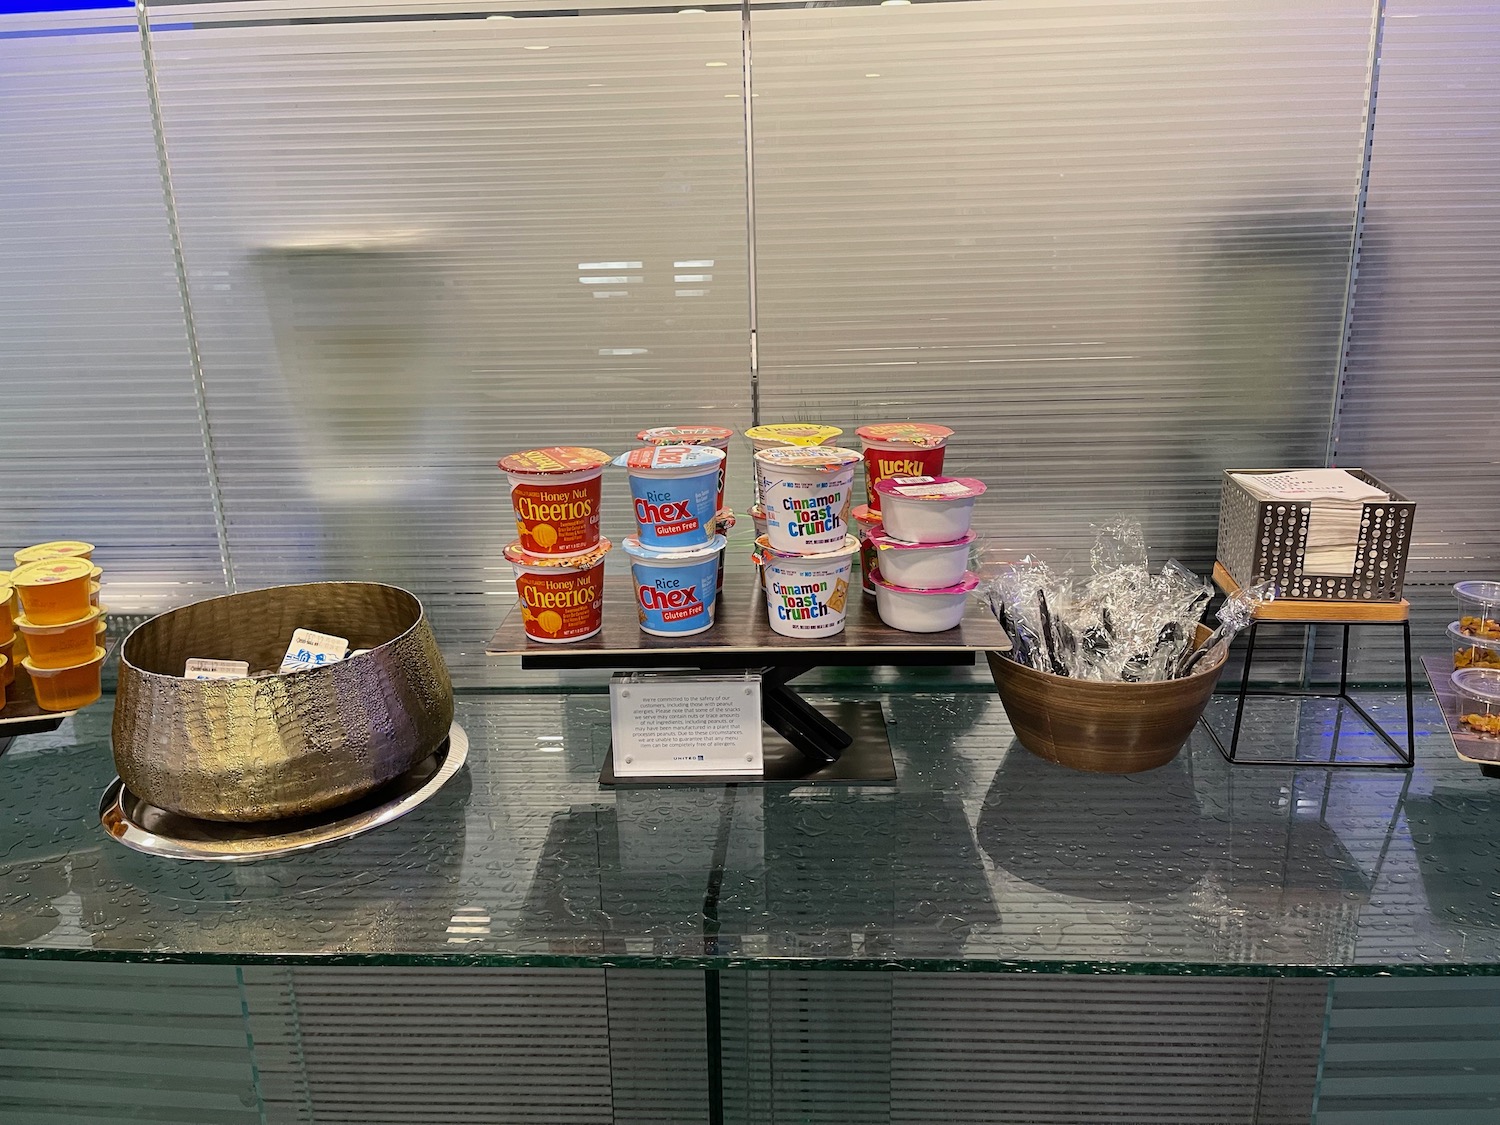 a group of cups of yogurt on a glass shelf